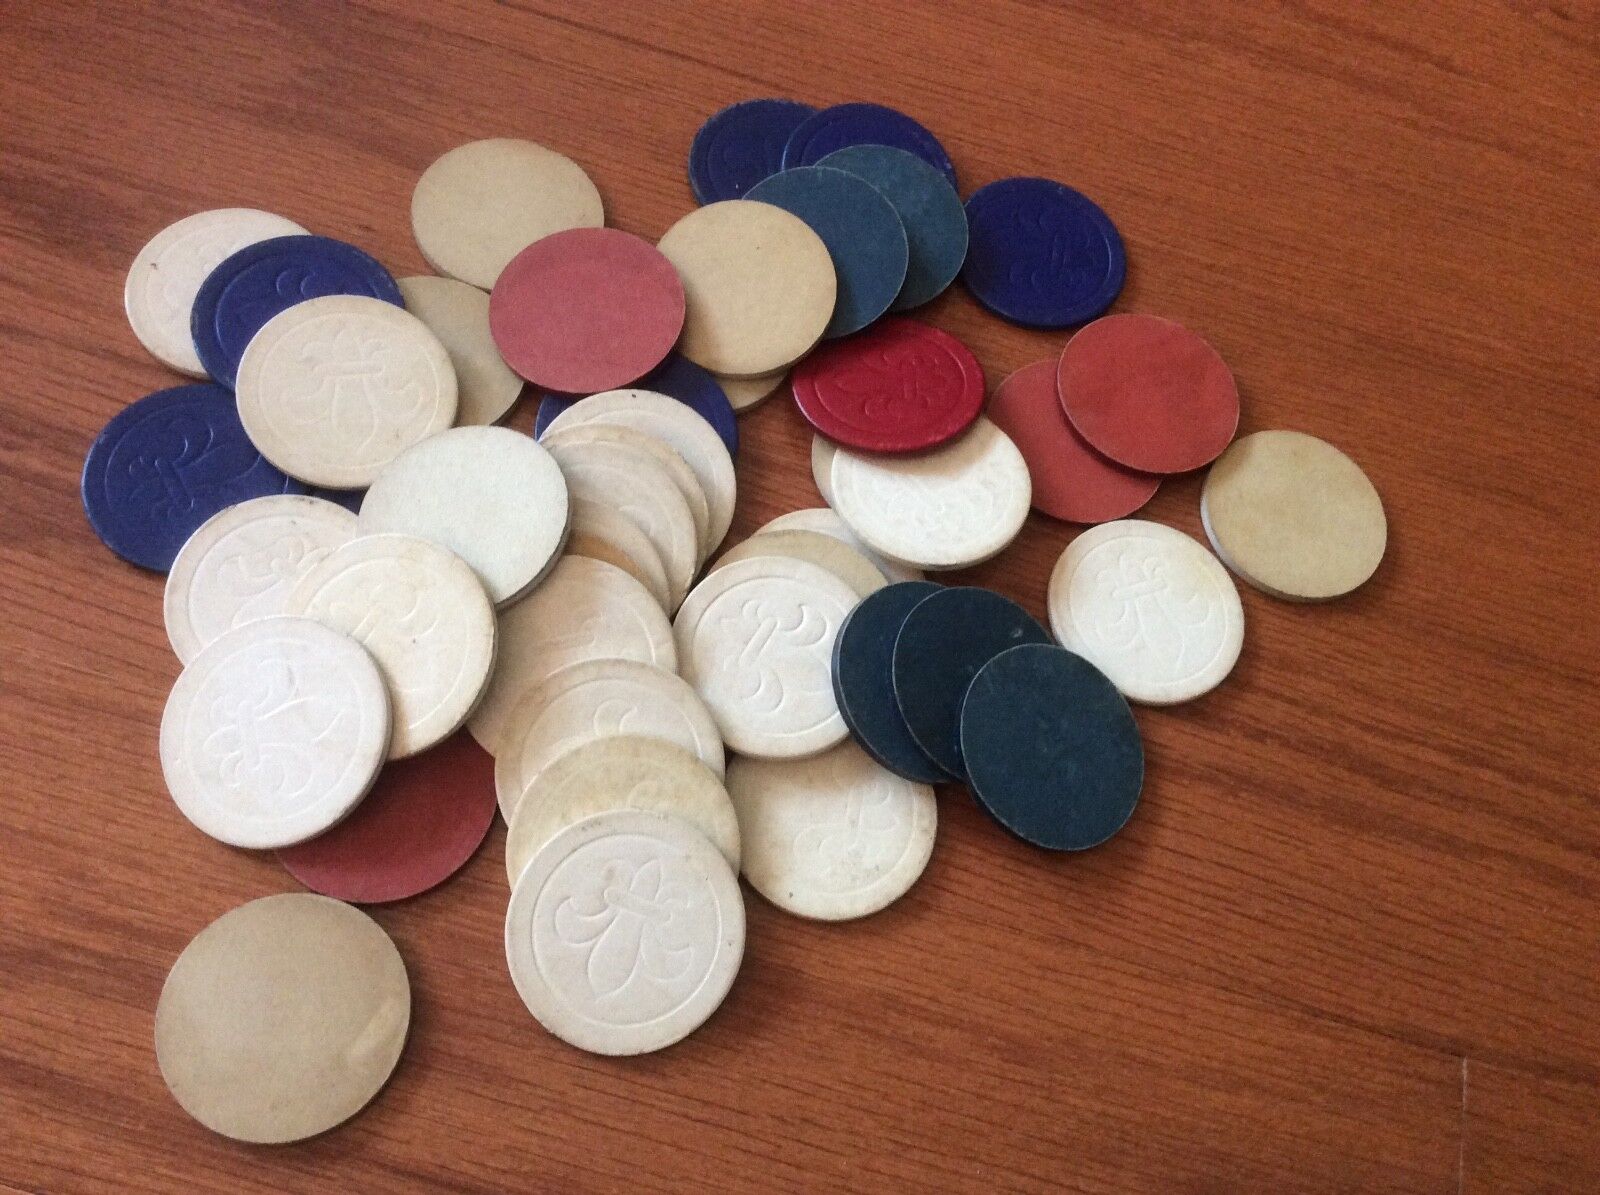 Vintage Lot of 45 poker chips 1940s Fleur de lis red blue white patriotic colors